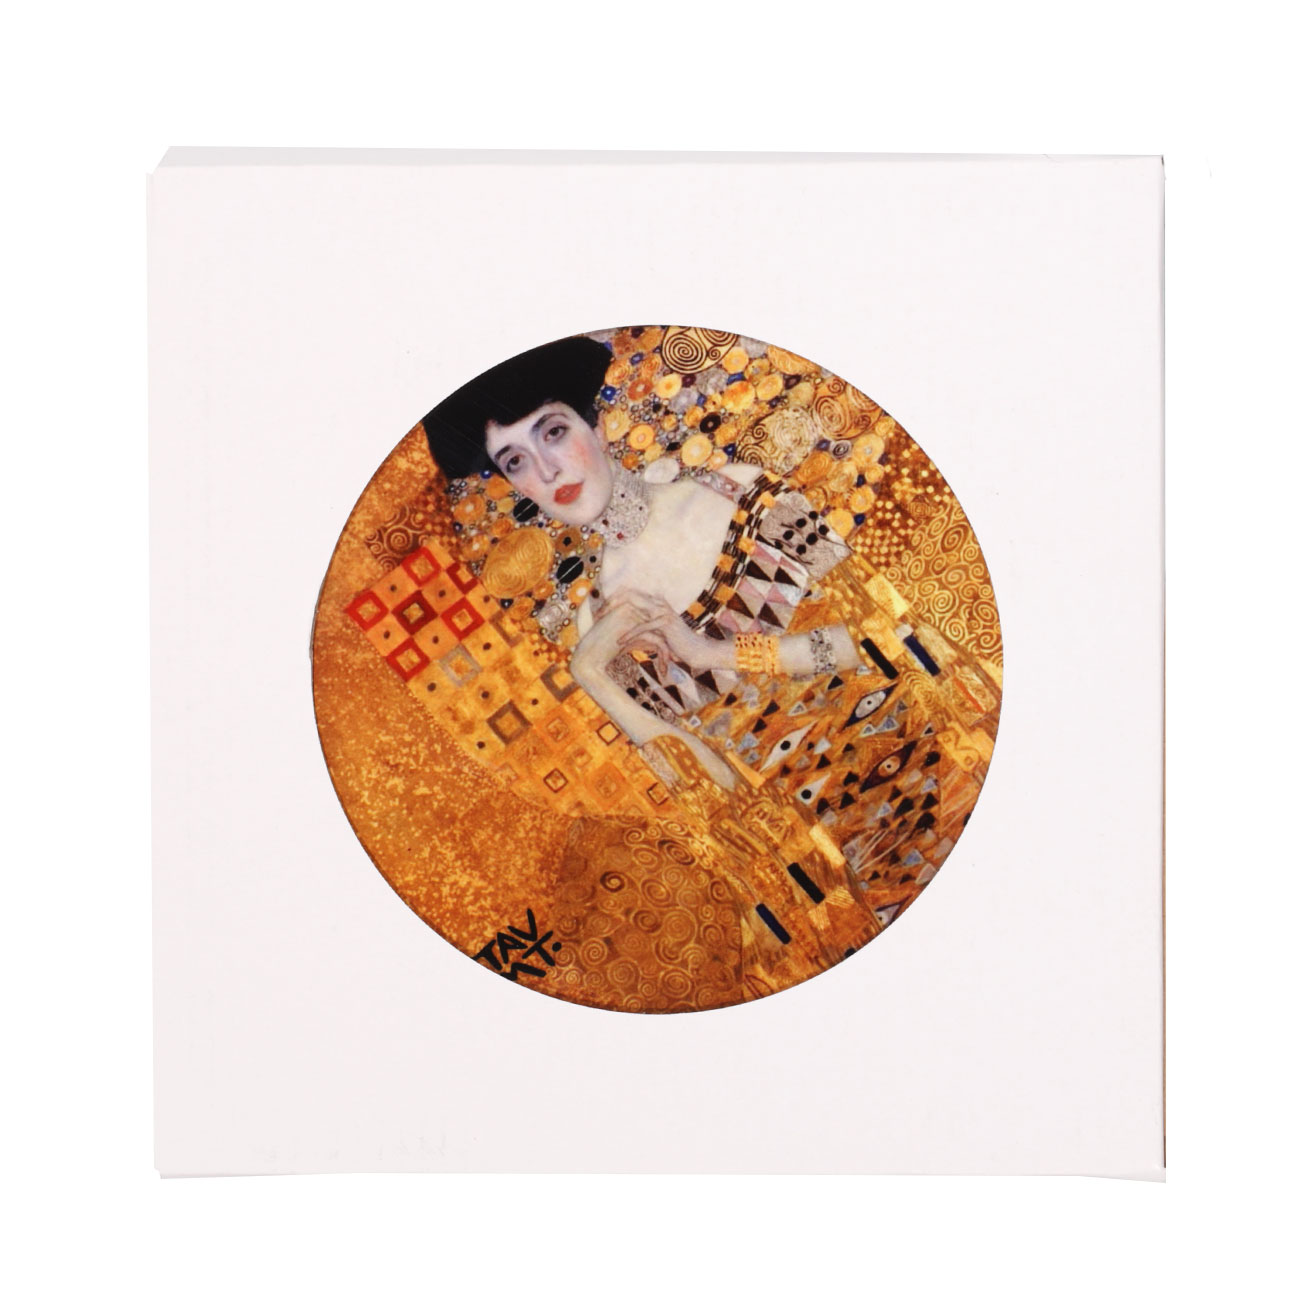 Подставка под горячее, 23x18 см, с ручкой, керамика/пробка, Золотая Адель, Климт, Art Adele изображение № 2